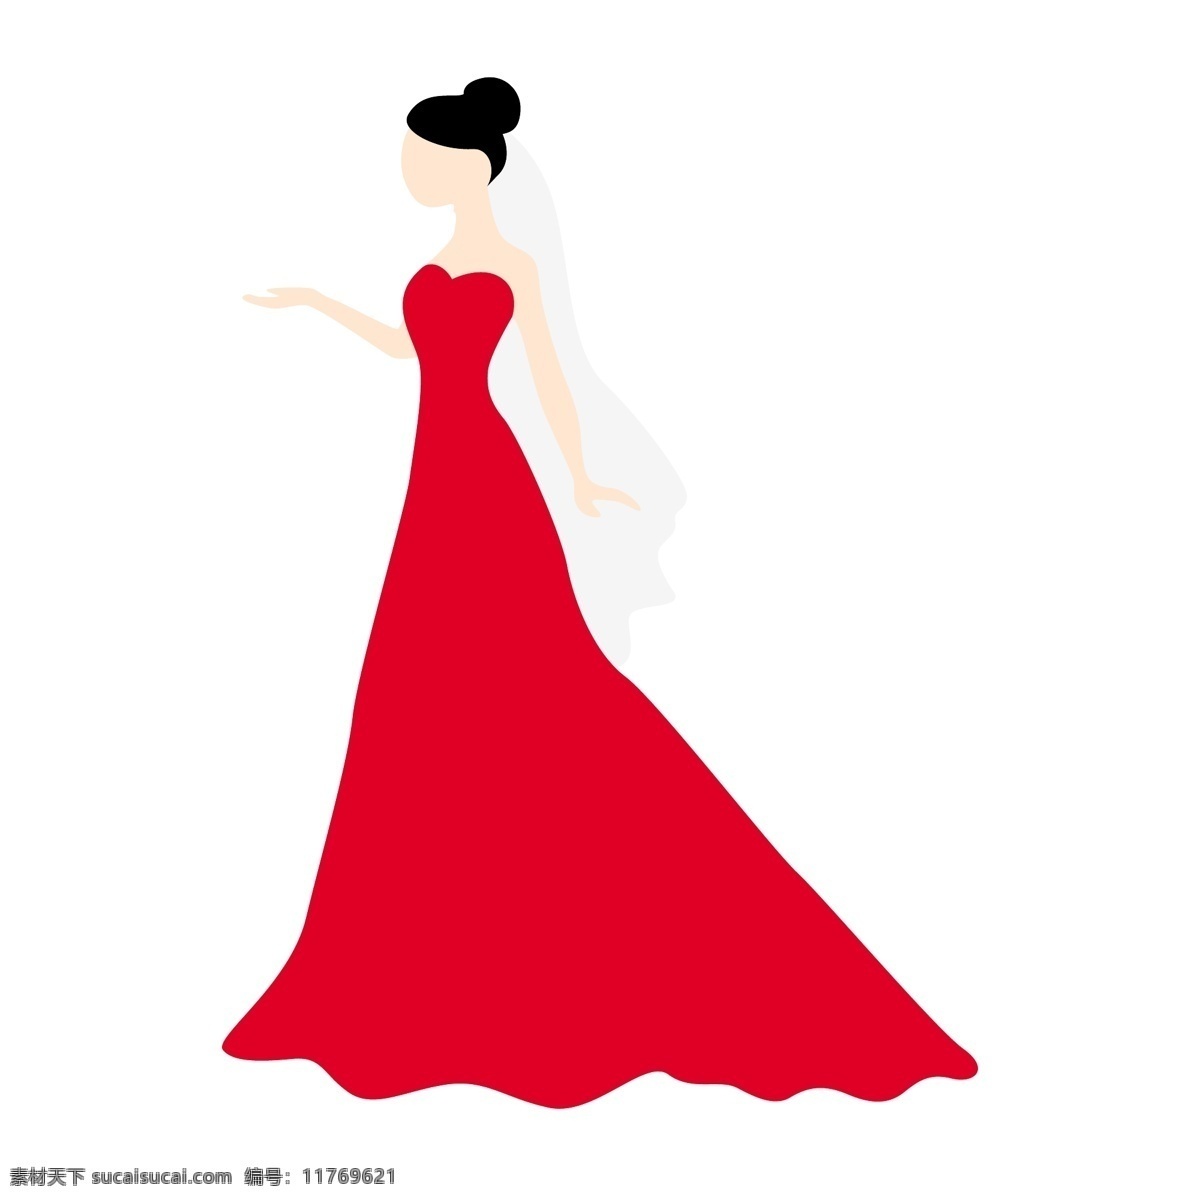 伸出 手 新年 矢量 免 抠 图 卡通的 手绘的 红色婚纱 红色裙子 红色礼服 新娘 新婚 结婚 婚礼 庆典 请帖 请柬